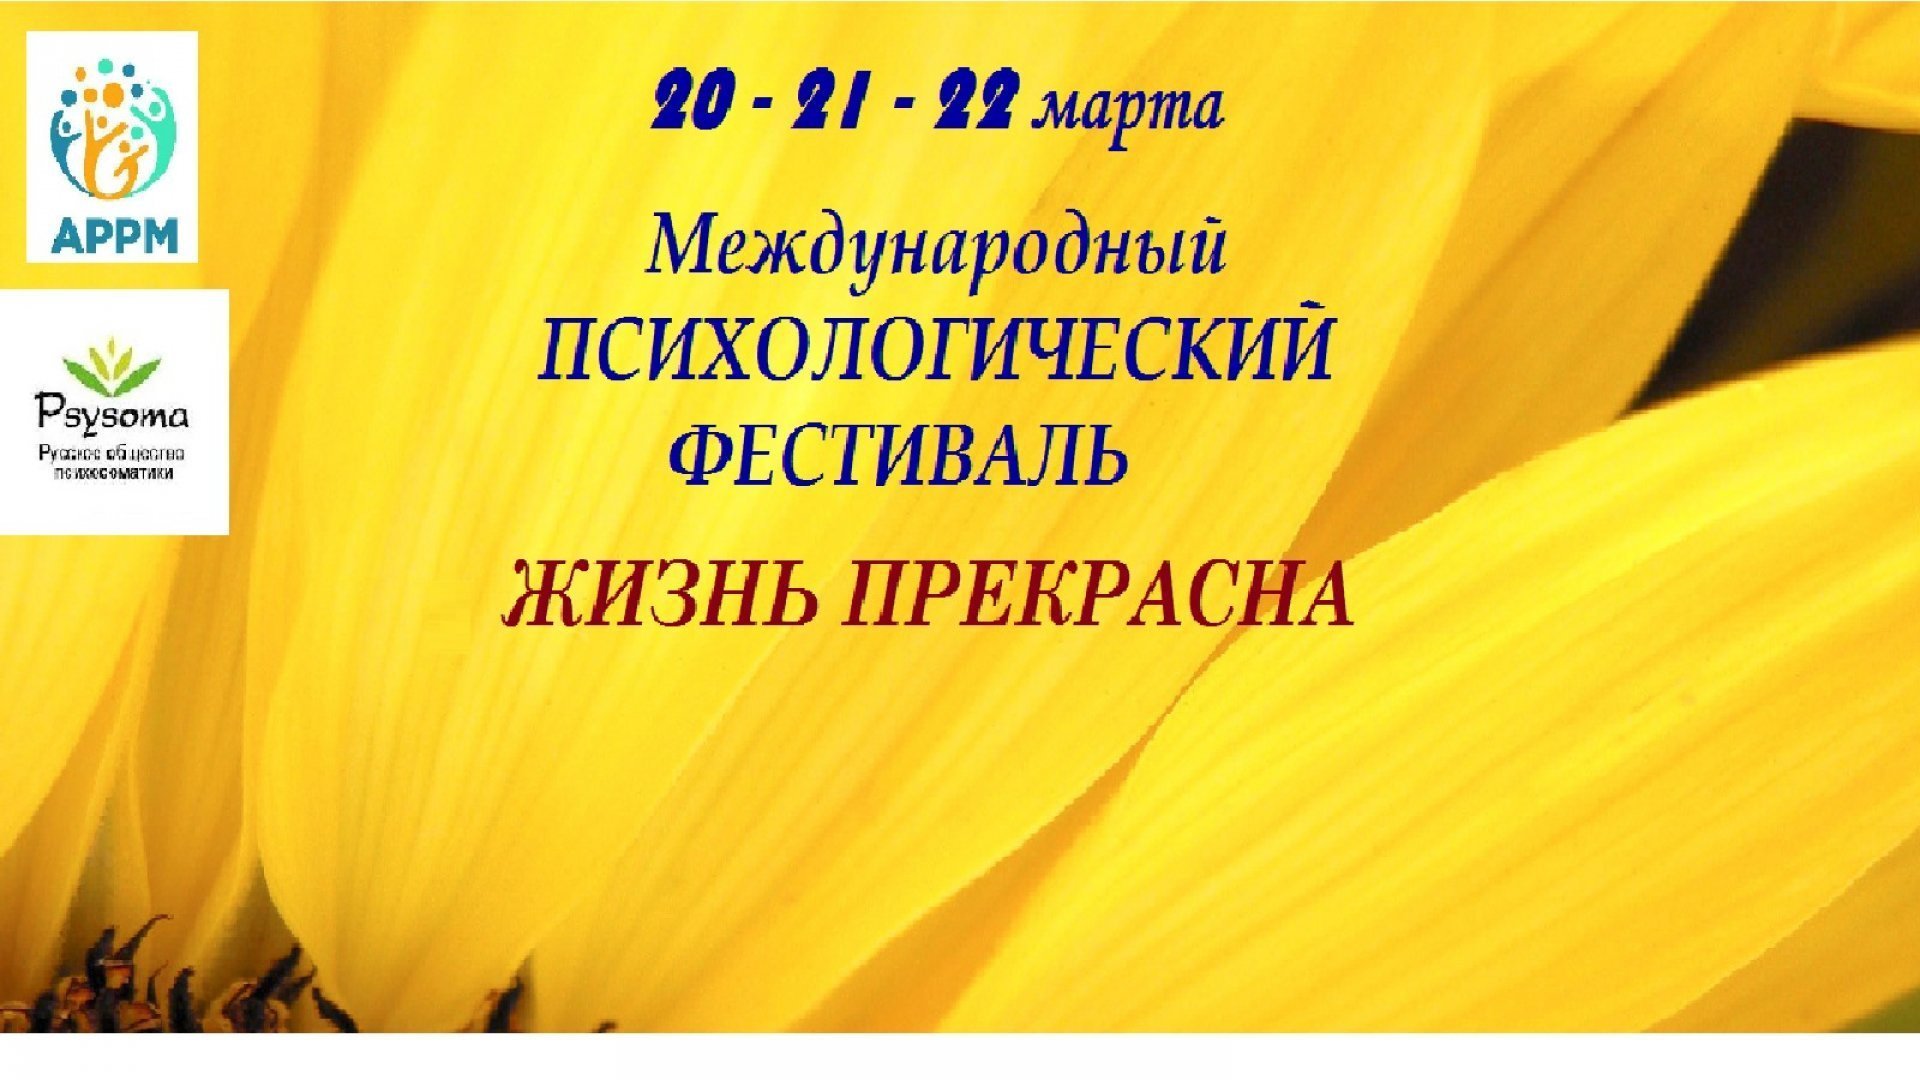 Международный Психологический фестиваль "Жизнь прекрасна"